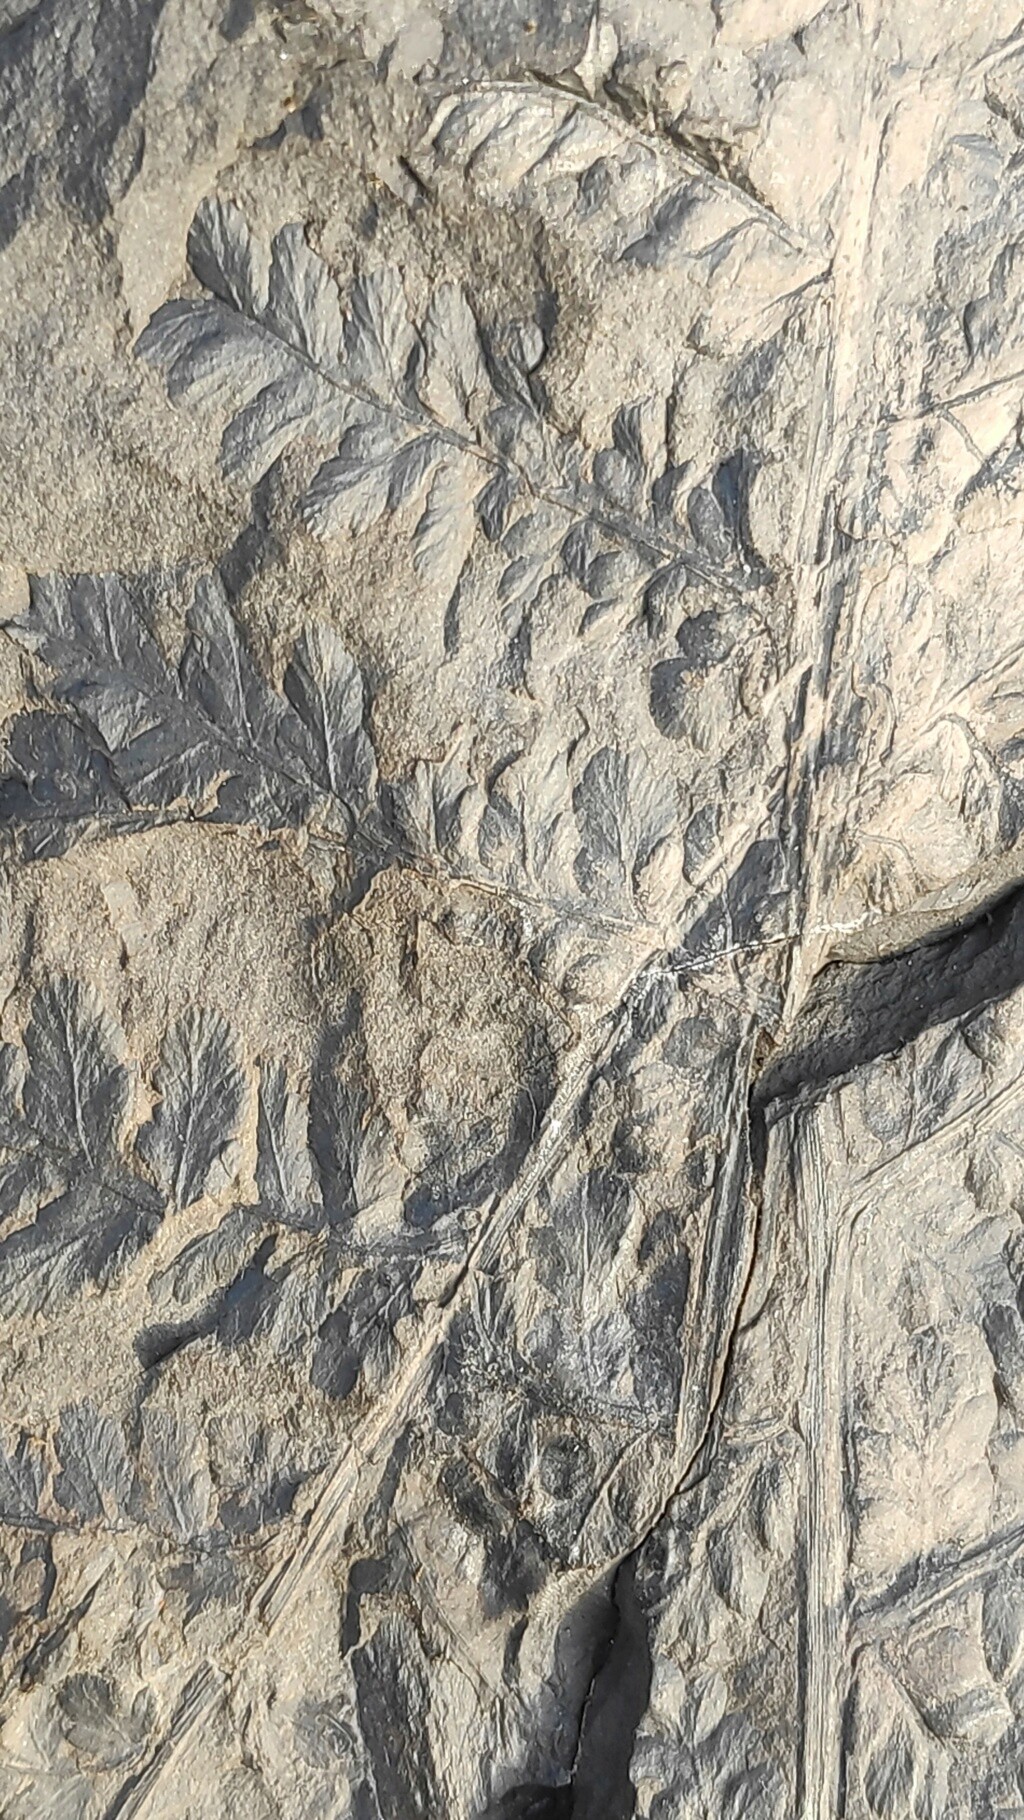 Sphenopteris..mina Carrasconte León- Carras33